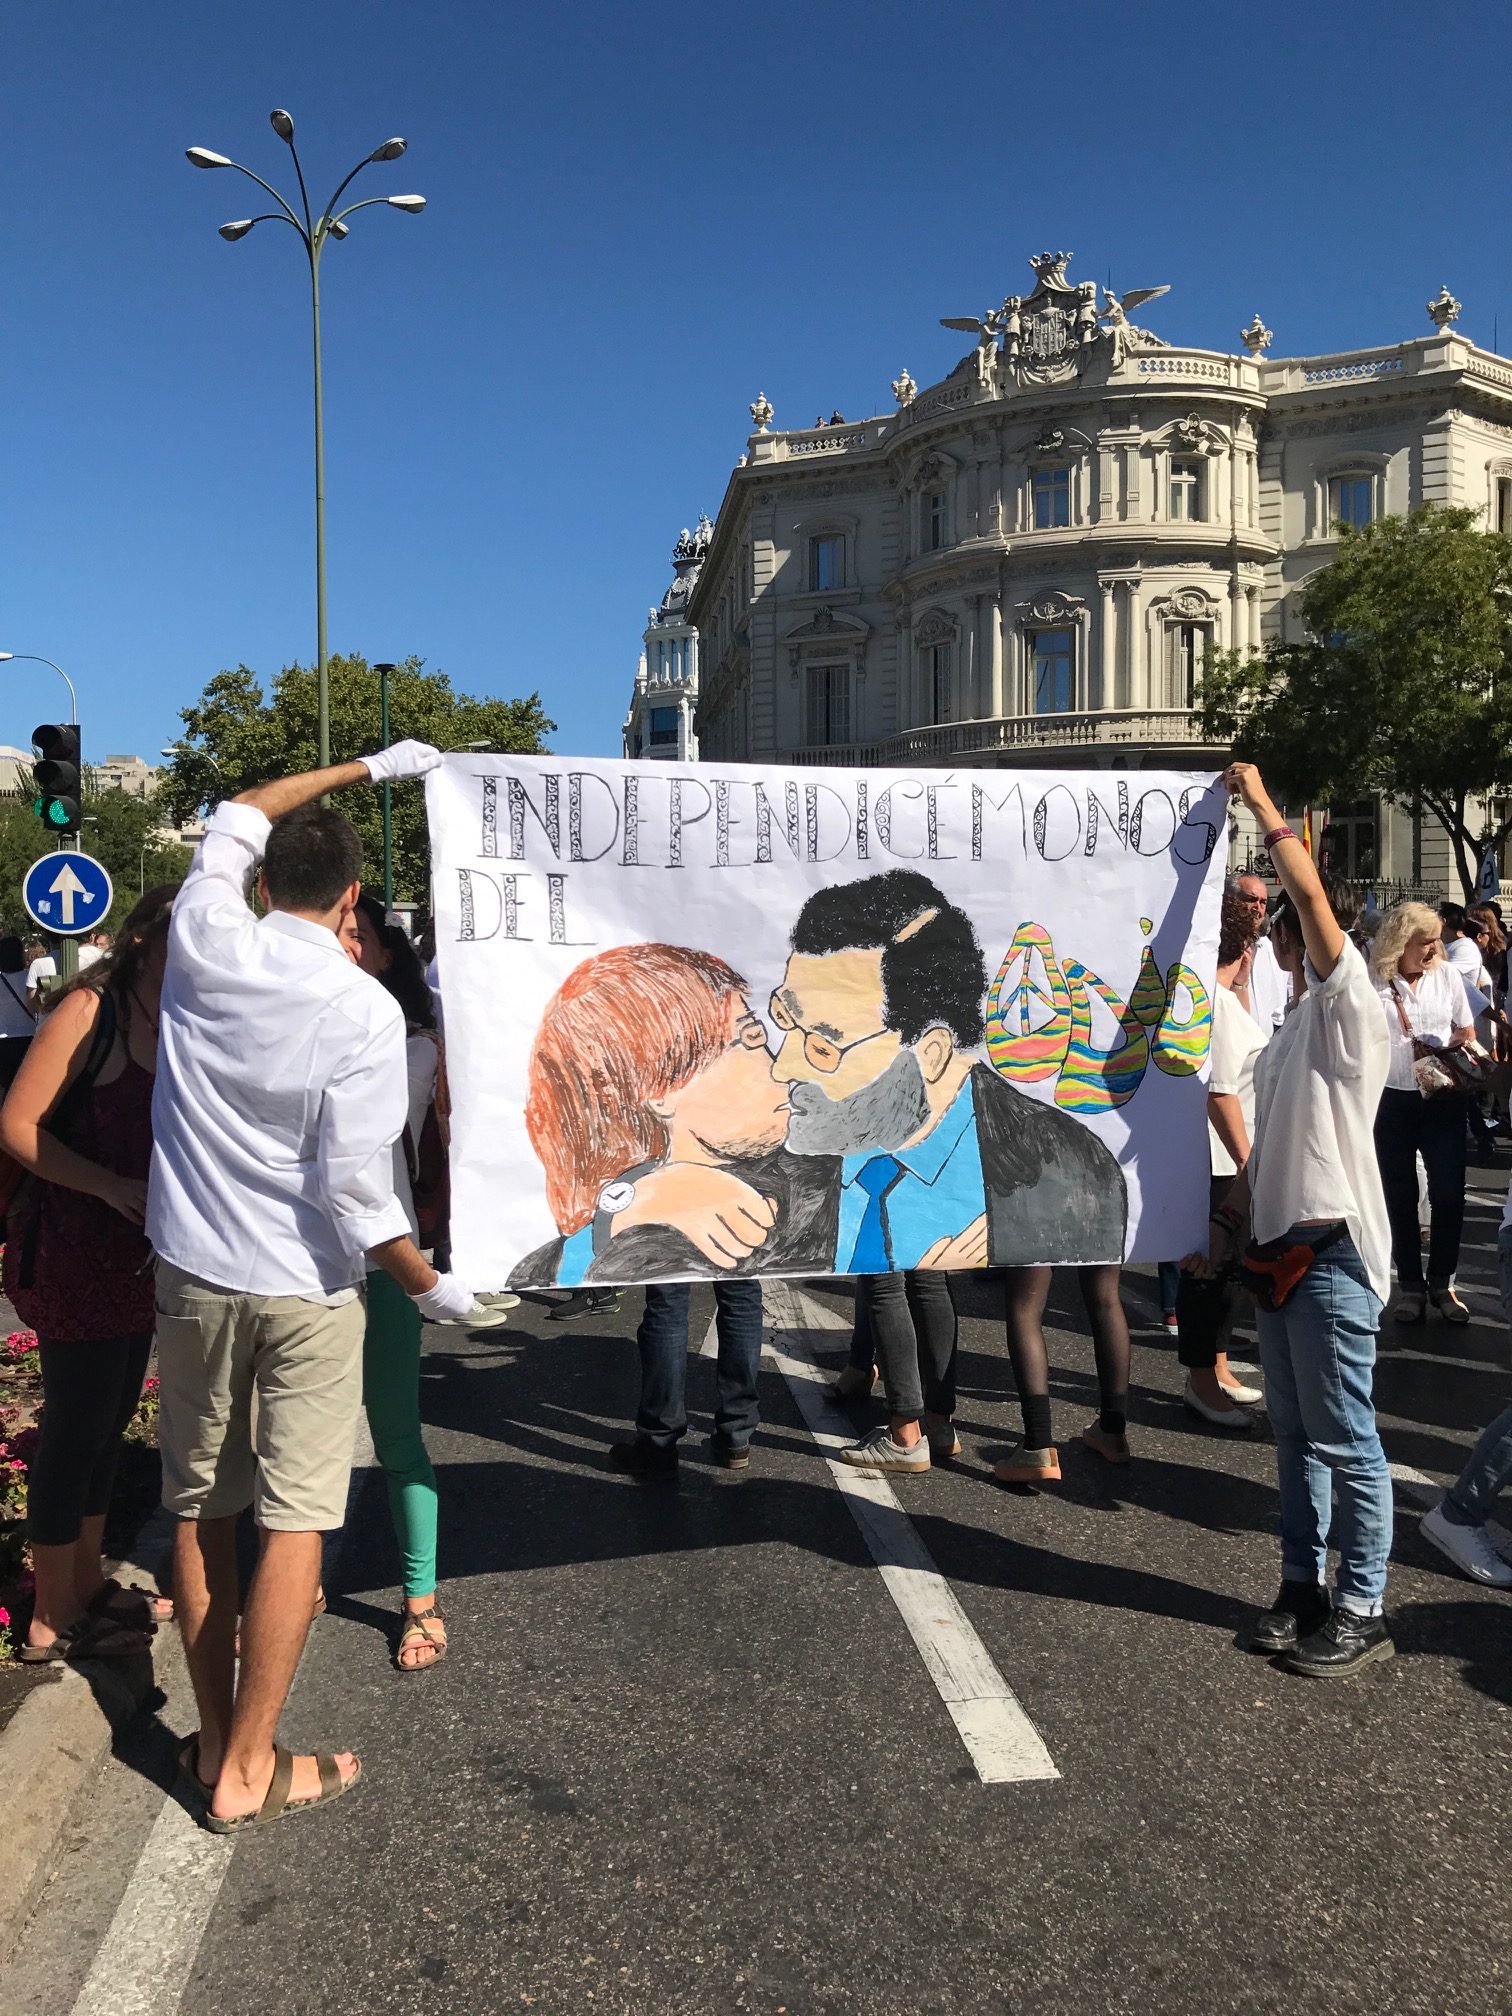 Las manifestaciones a favor del diálogo y la unidad de España, en imágenes 8